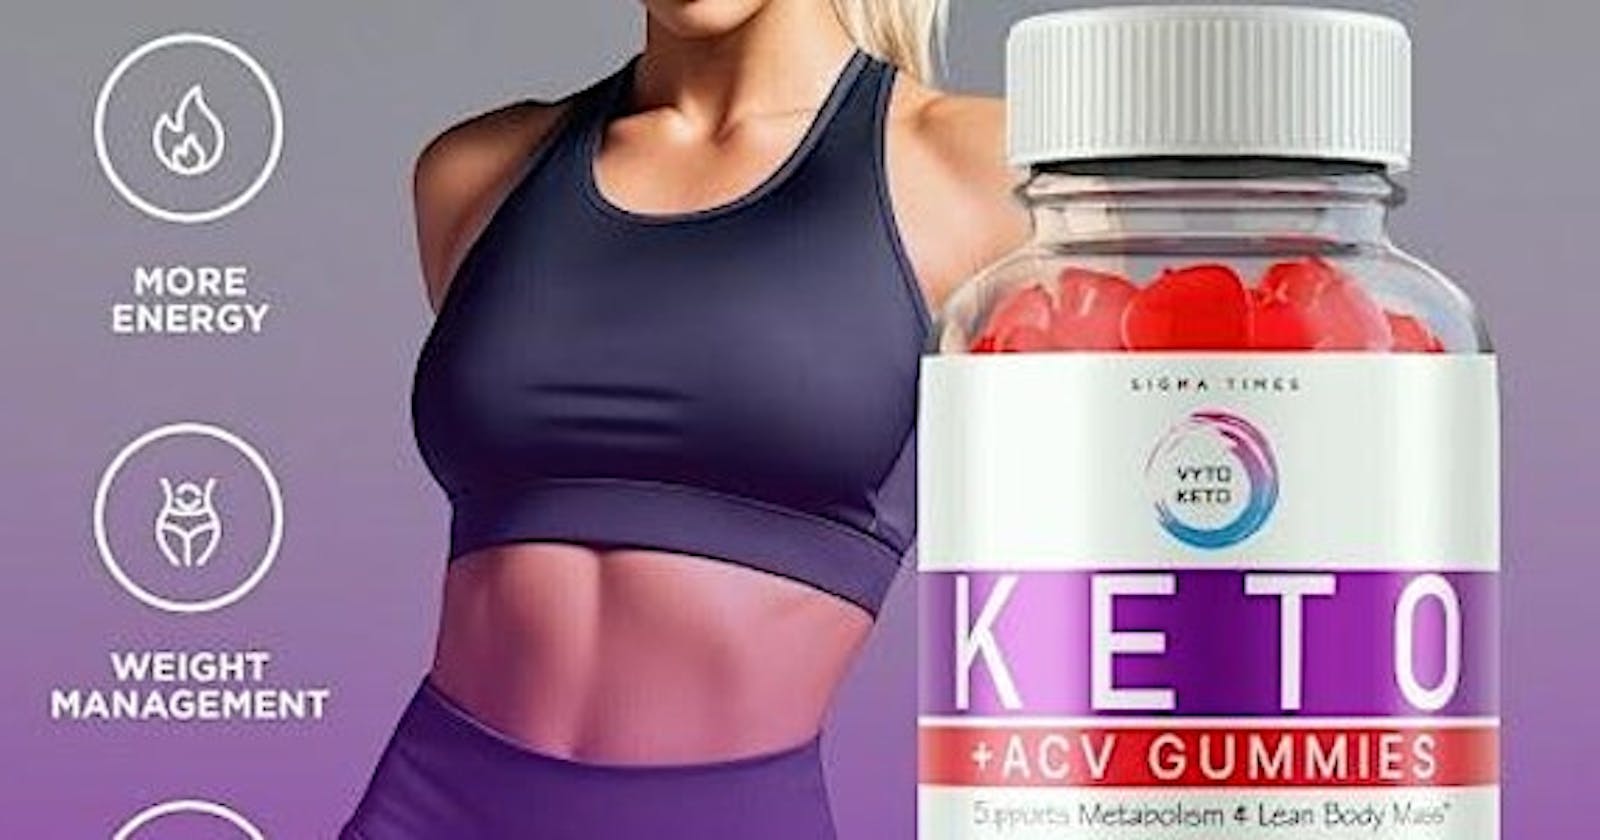 Vyto Keto + ACV Gummies Introducing: Fuel Your Body with Vyto Keto